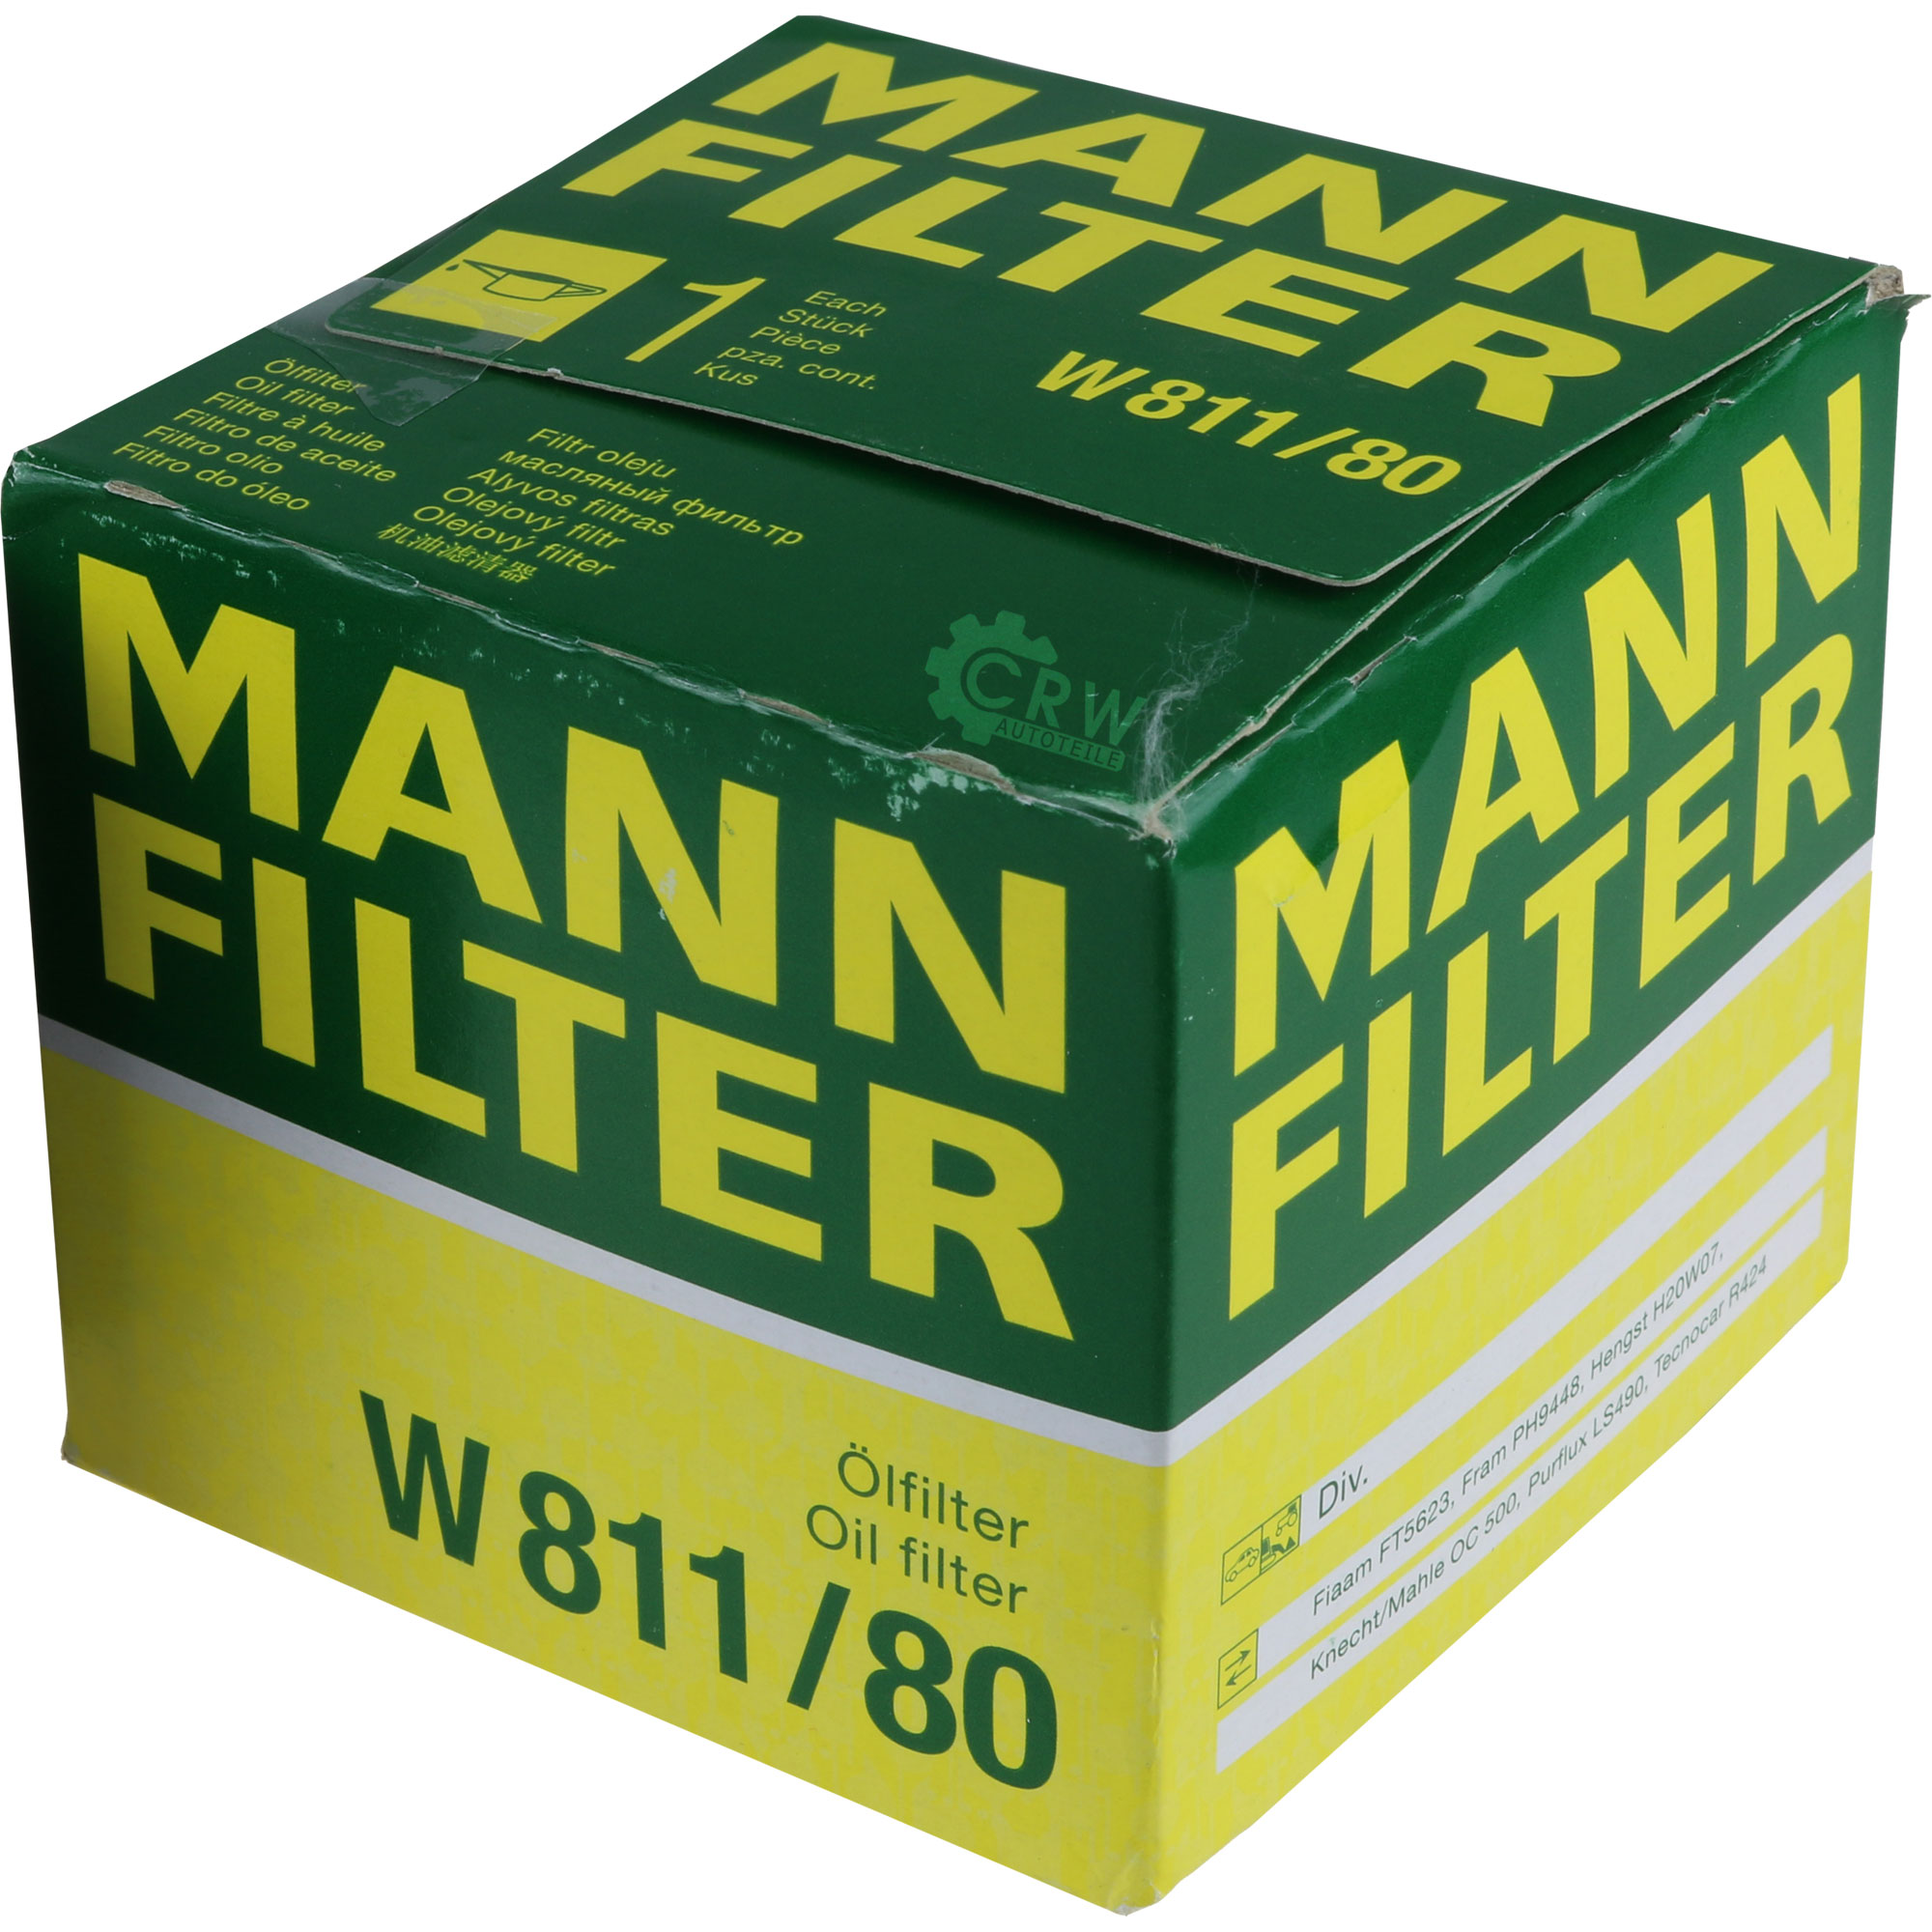 MANN-FILTER Ölfilter W 811/80 Oil Filter